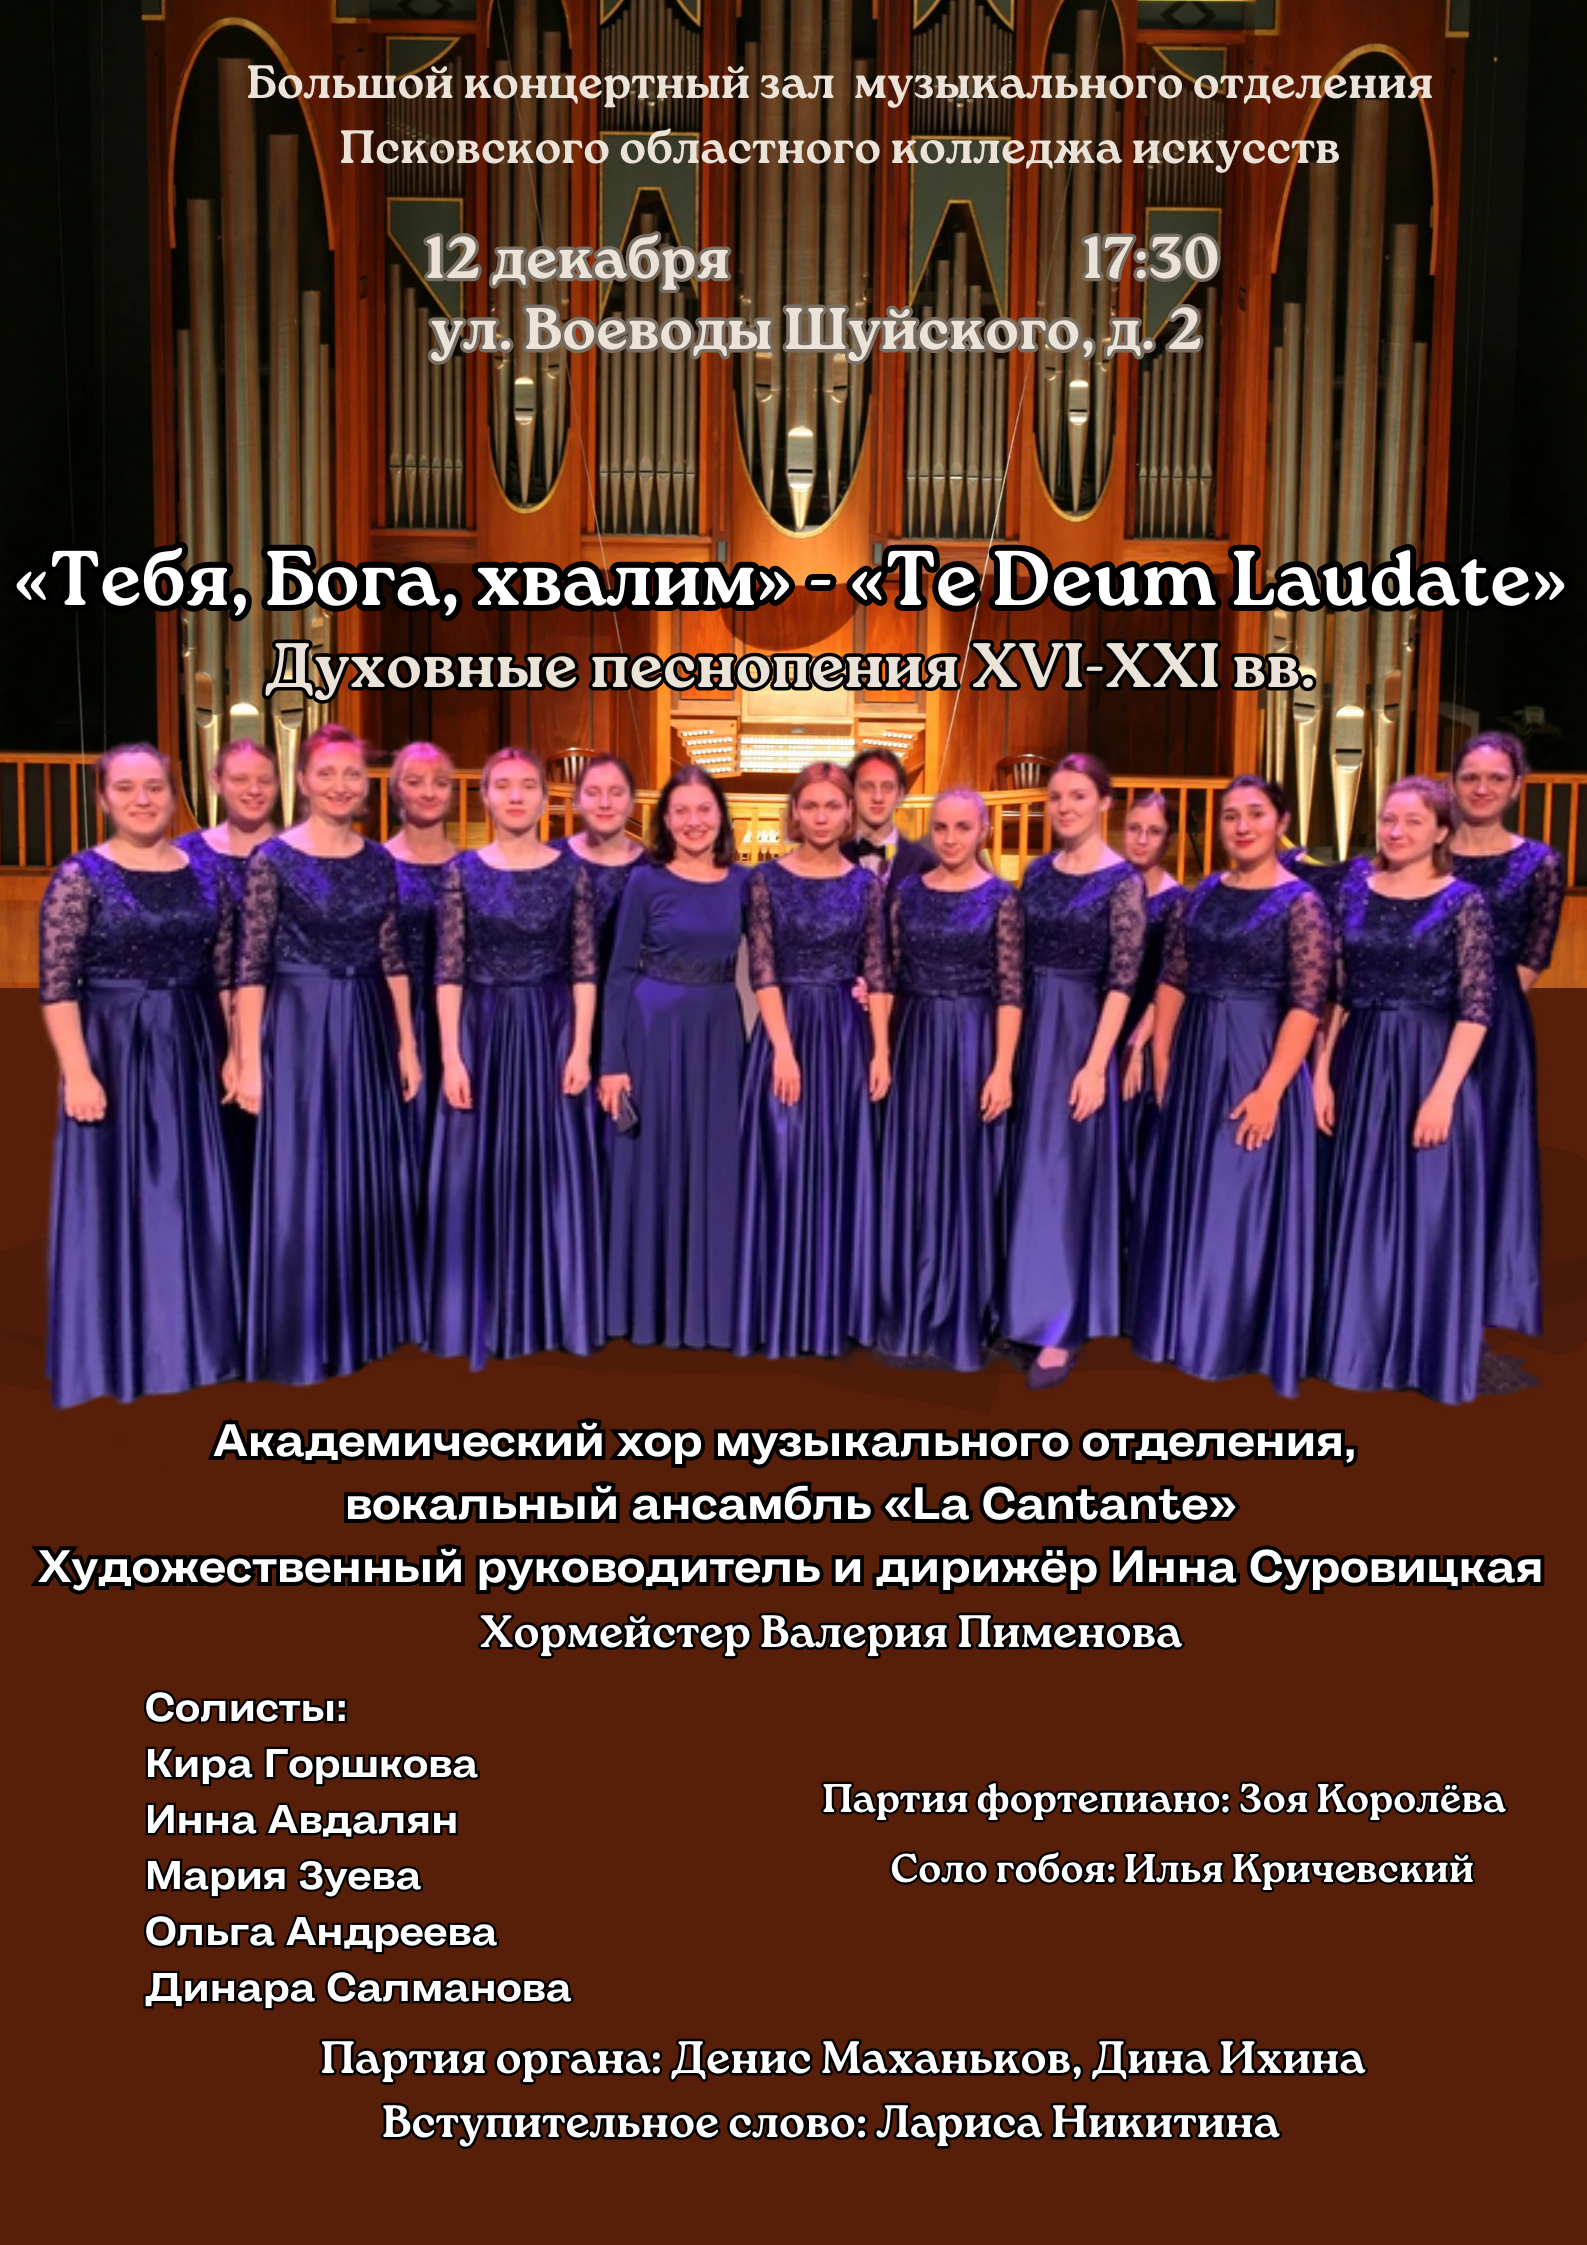 na-kontsert-duhovnoj-muzyki-priglashaet-pskovichej-kolledzh-iskusstv-12-dekabrya